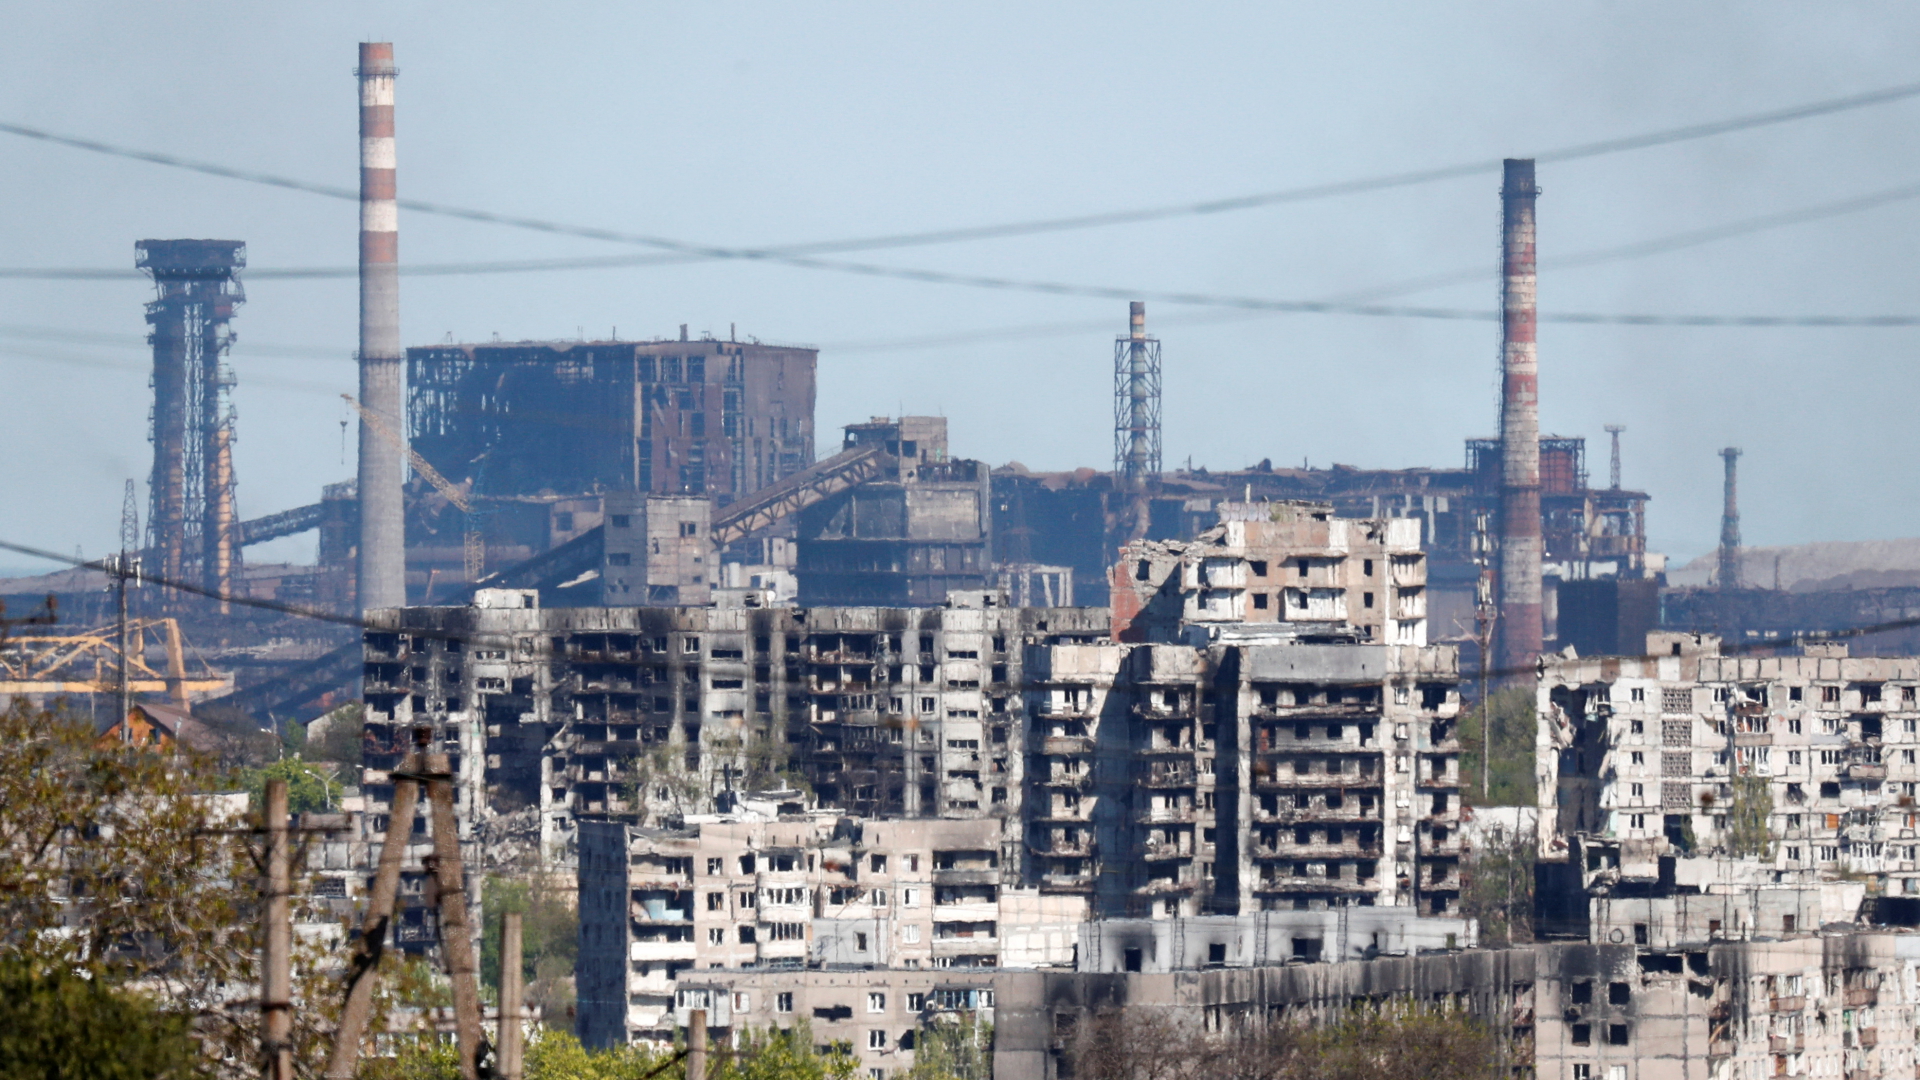 Das Asowstalwerk in der weitgehend zerstörten Stadt Mariupol | REUTERS